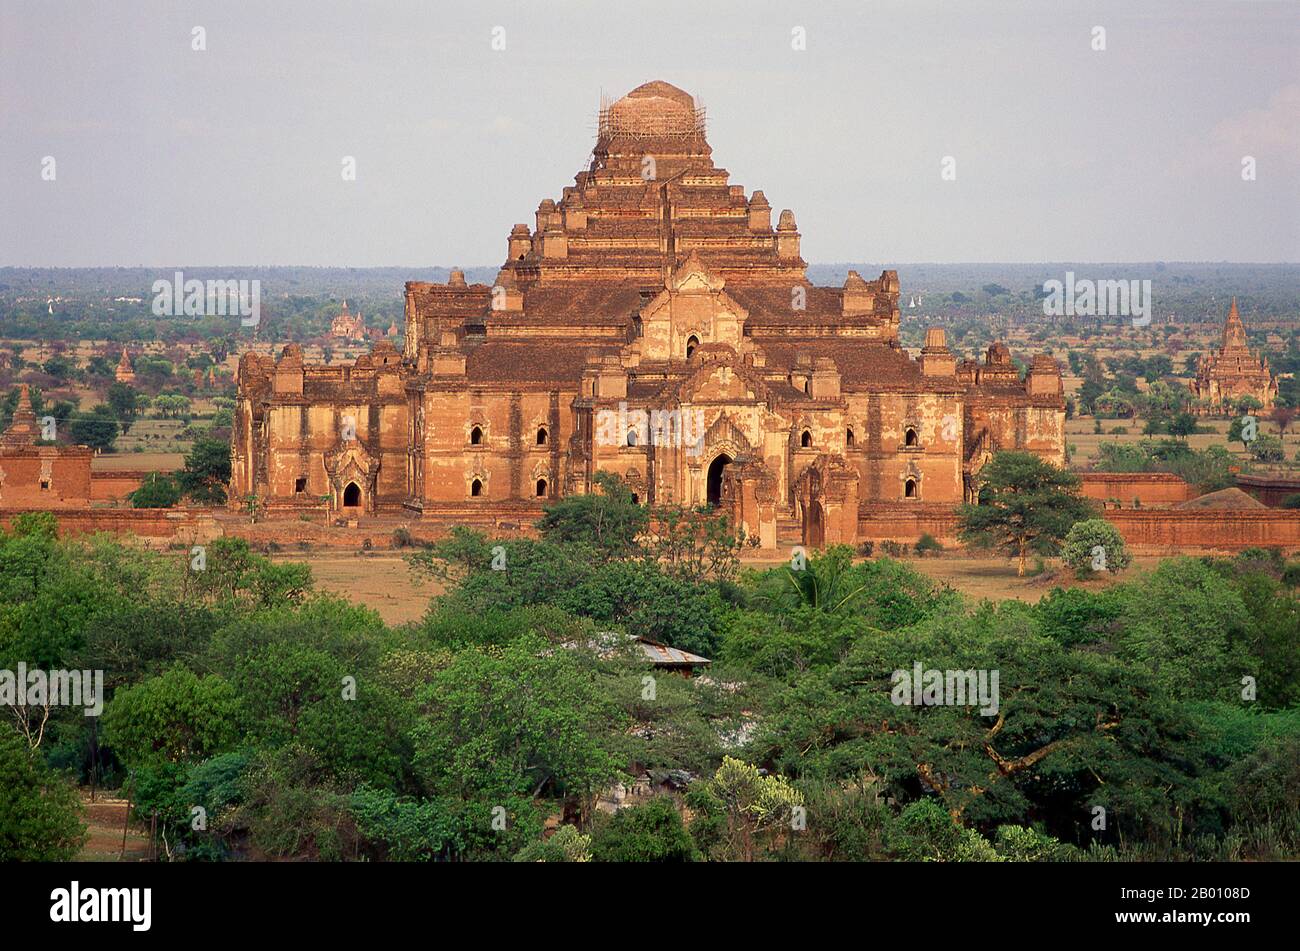 Birmania: Tempio di Dhammayangyi, Bagan (Pagan) Città Antica. Il tempio di Dhammayangyi è il più grande di Bagan ed è stato costruito durante il regno del re Narathu (1167-1170). Bagan, ex Pagan, è stato costruito principalmente tra il 11 ° secolo e 13 ° secolo. Formalmente chiamato Arimaddanapura o Arimaddana (la città del Crusher Enemy) e conosciuto anche come Tambadipa (la terra del rame) o Tassadessa (la terra dei cortei), era la capitale di diversi regni antichi in Birmania. Foto Stock